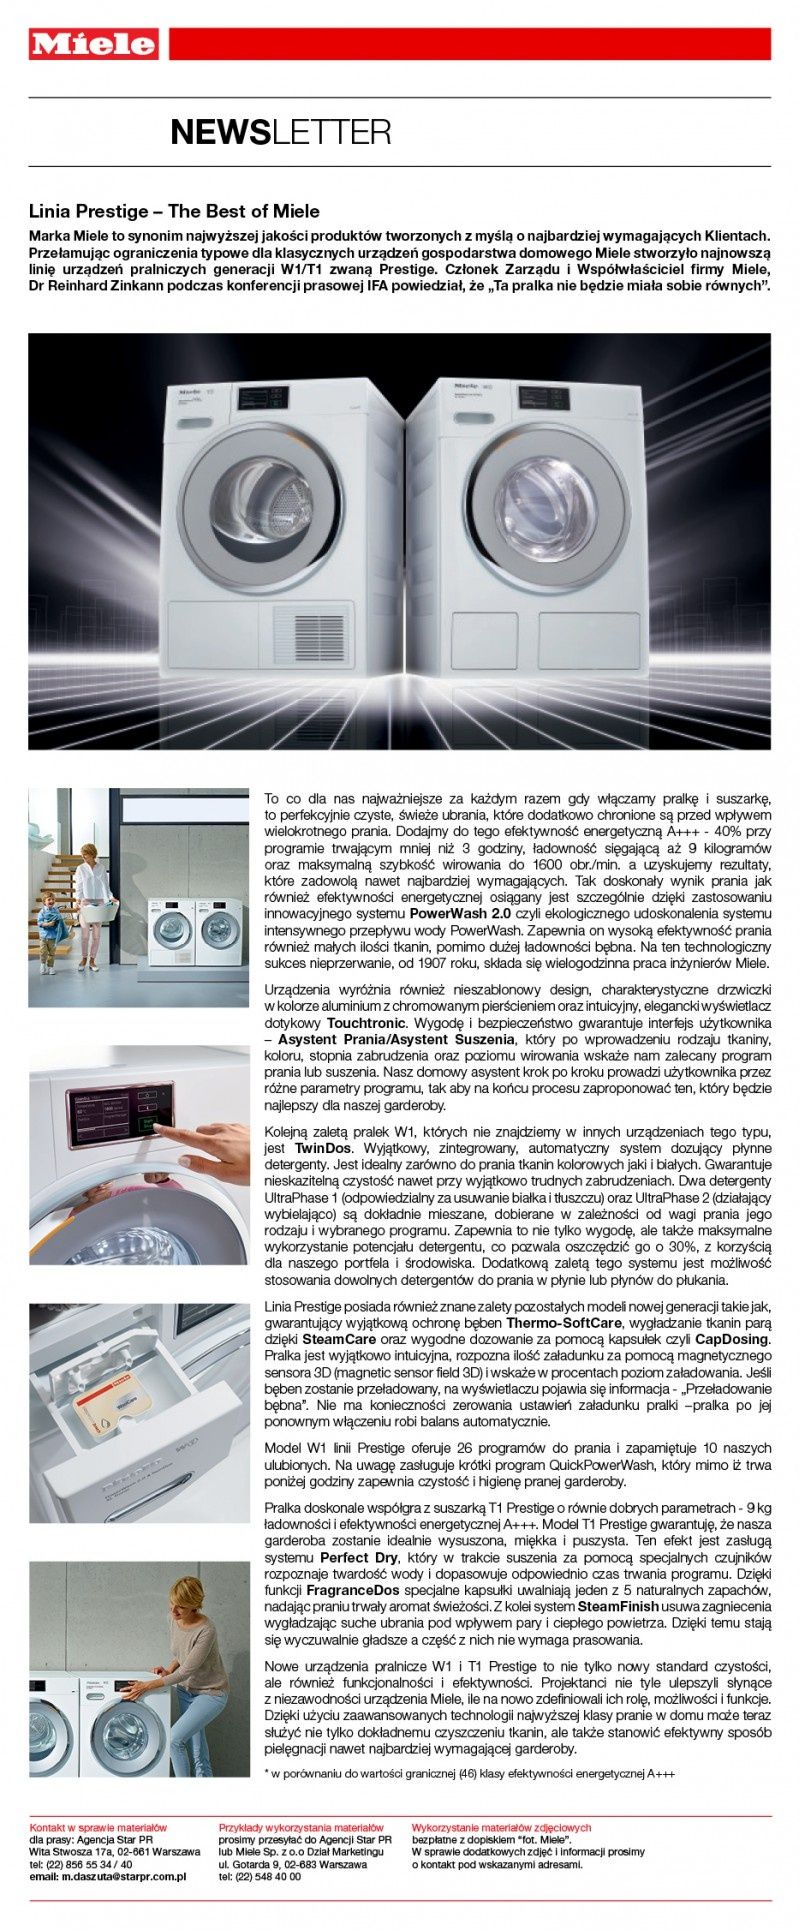 Nowa linia Prestige generacji urządzeń pralniczych W1/T1